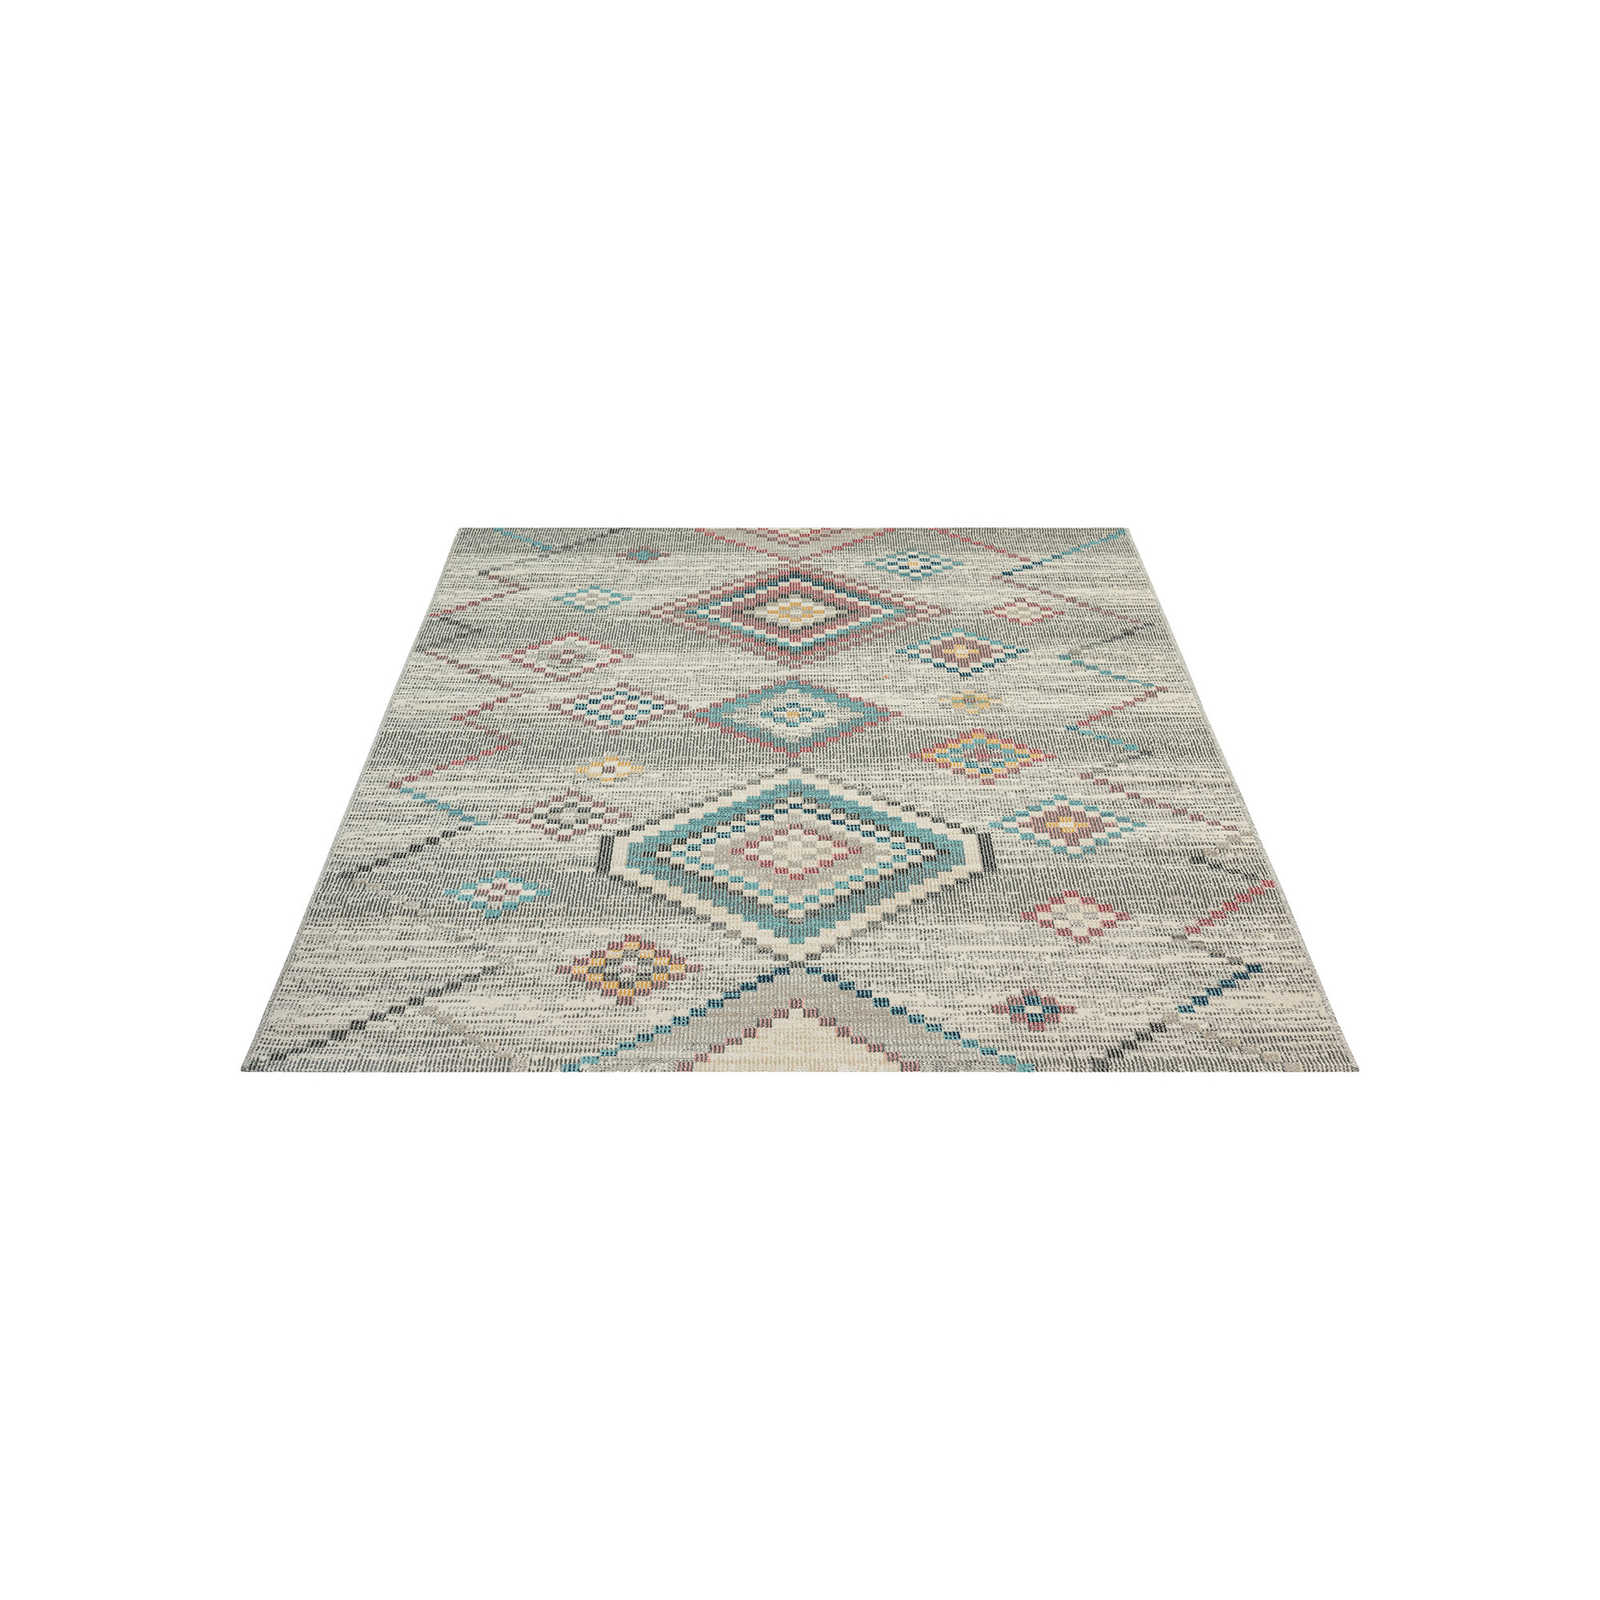 Cremefarbener Outdoor Teppich aus Flachgewebe – 230 x 160 cm
